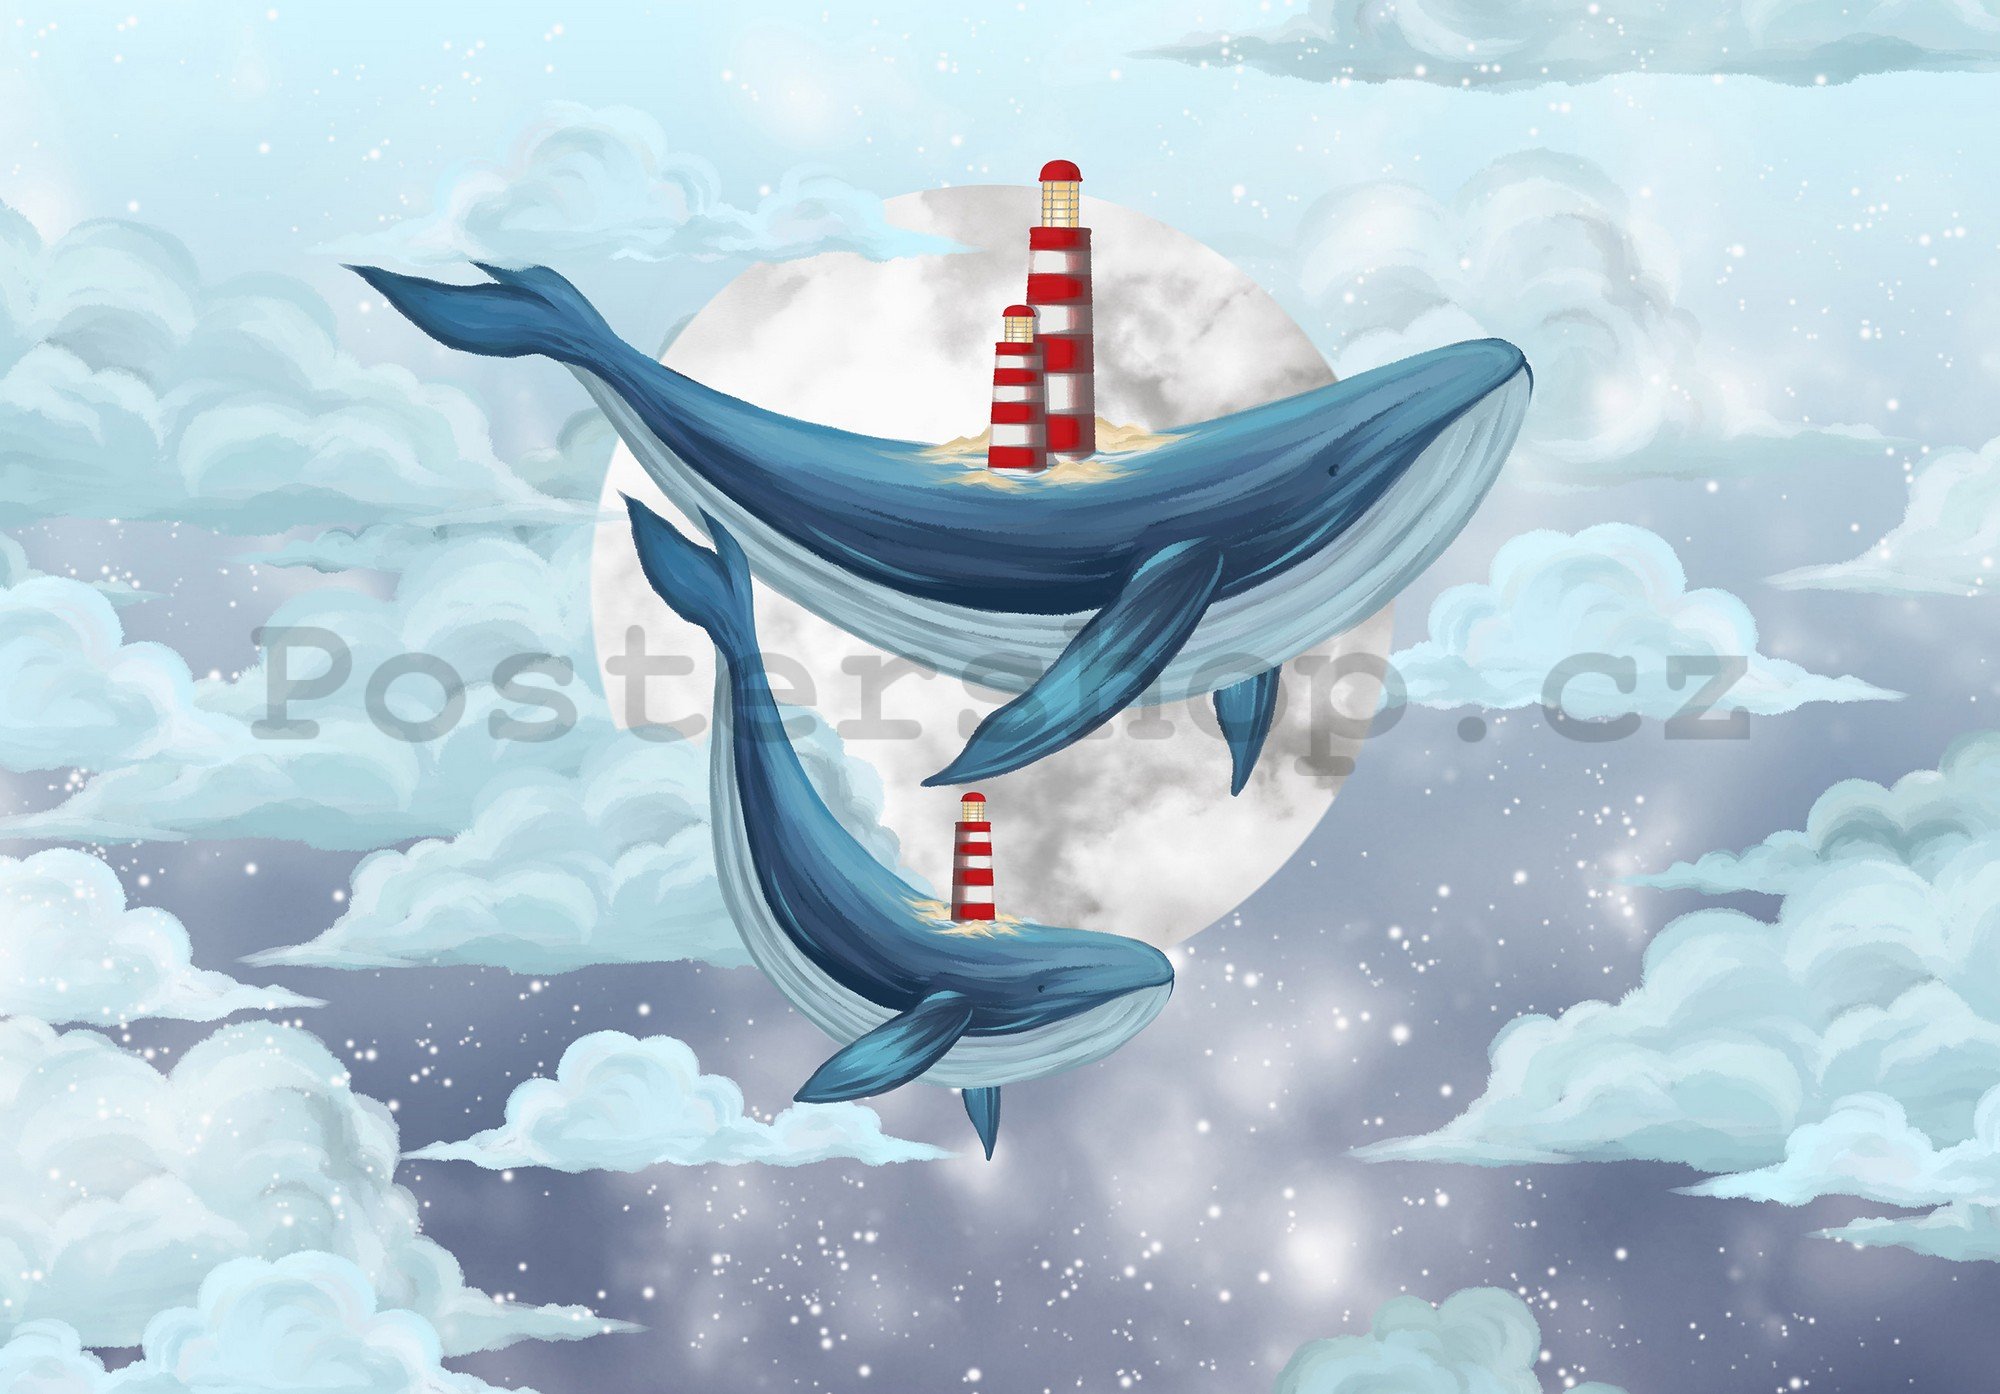 Fototapety vliesové: Whales - 368x254 cm